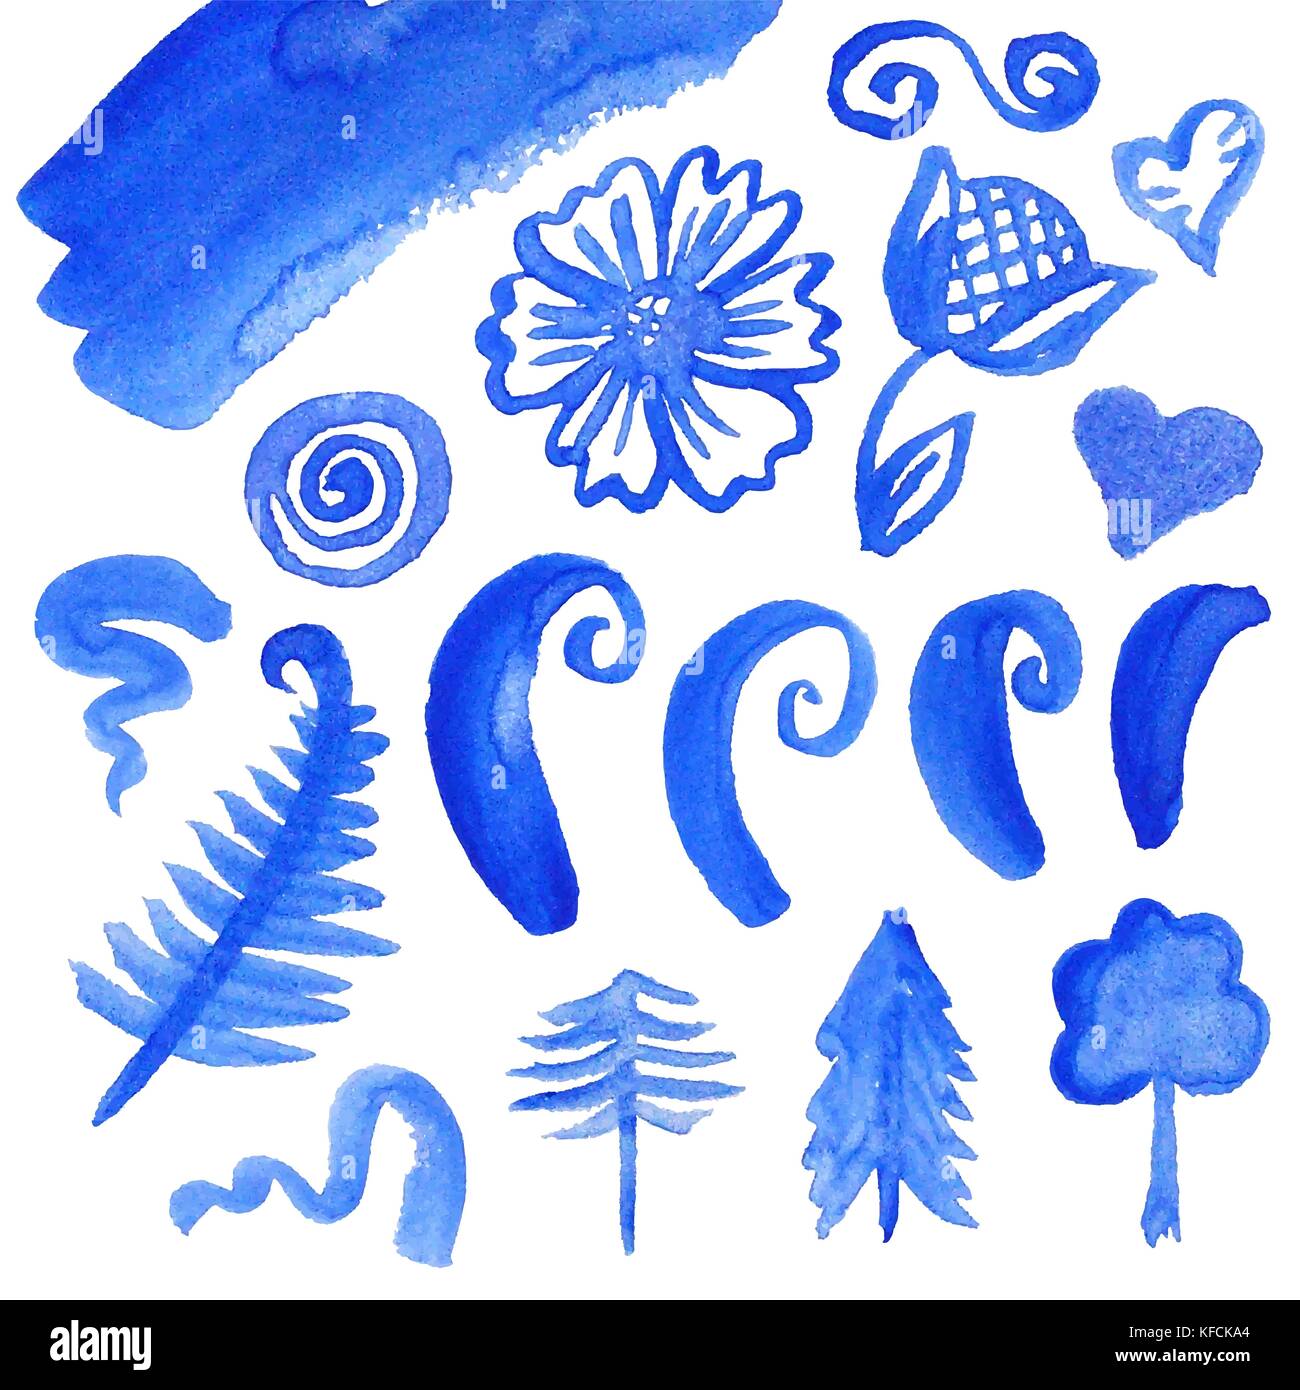 Vektor Sammlung von Aquarell Elemente für die Gestaltung und Dekoration, der blauen Farbe auf weißem Hintergrund Stock Vektor